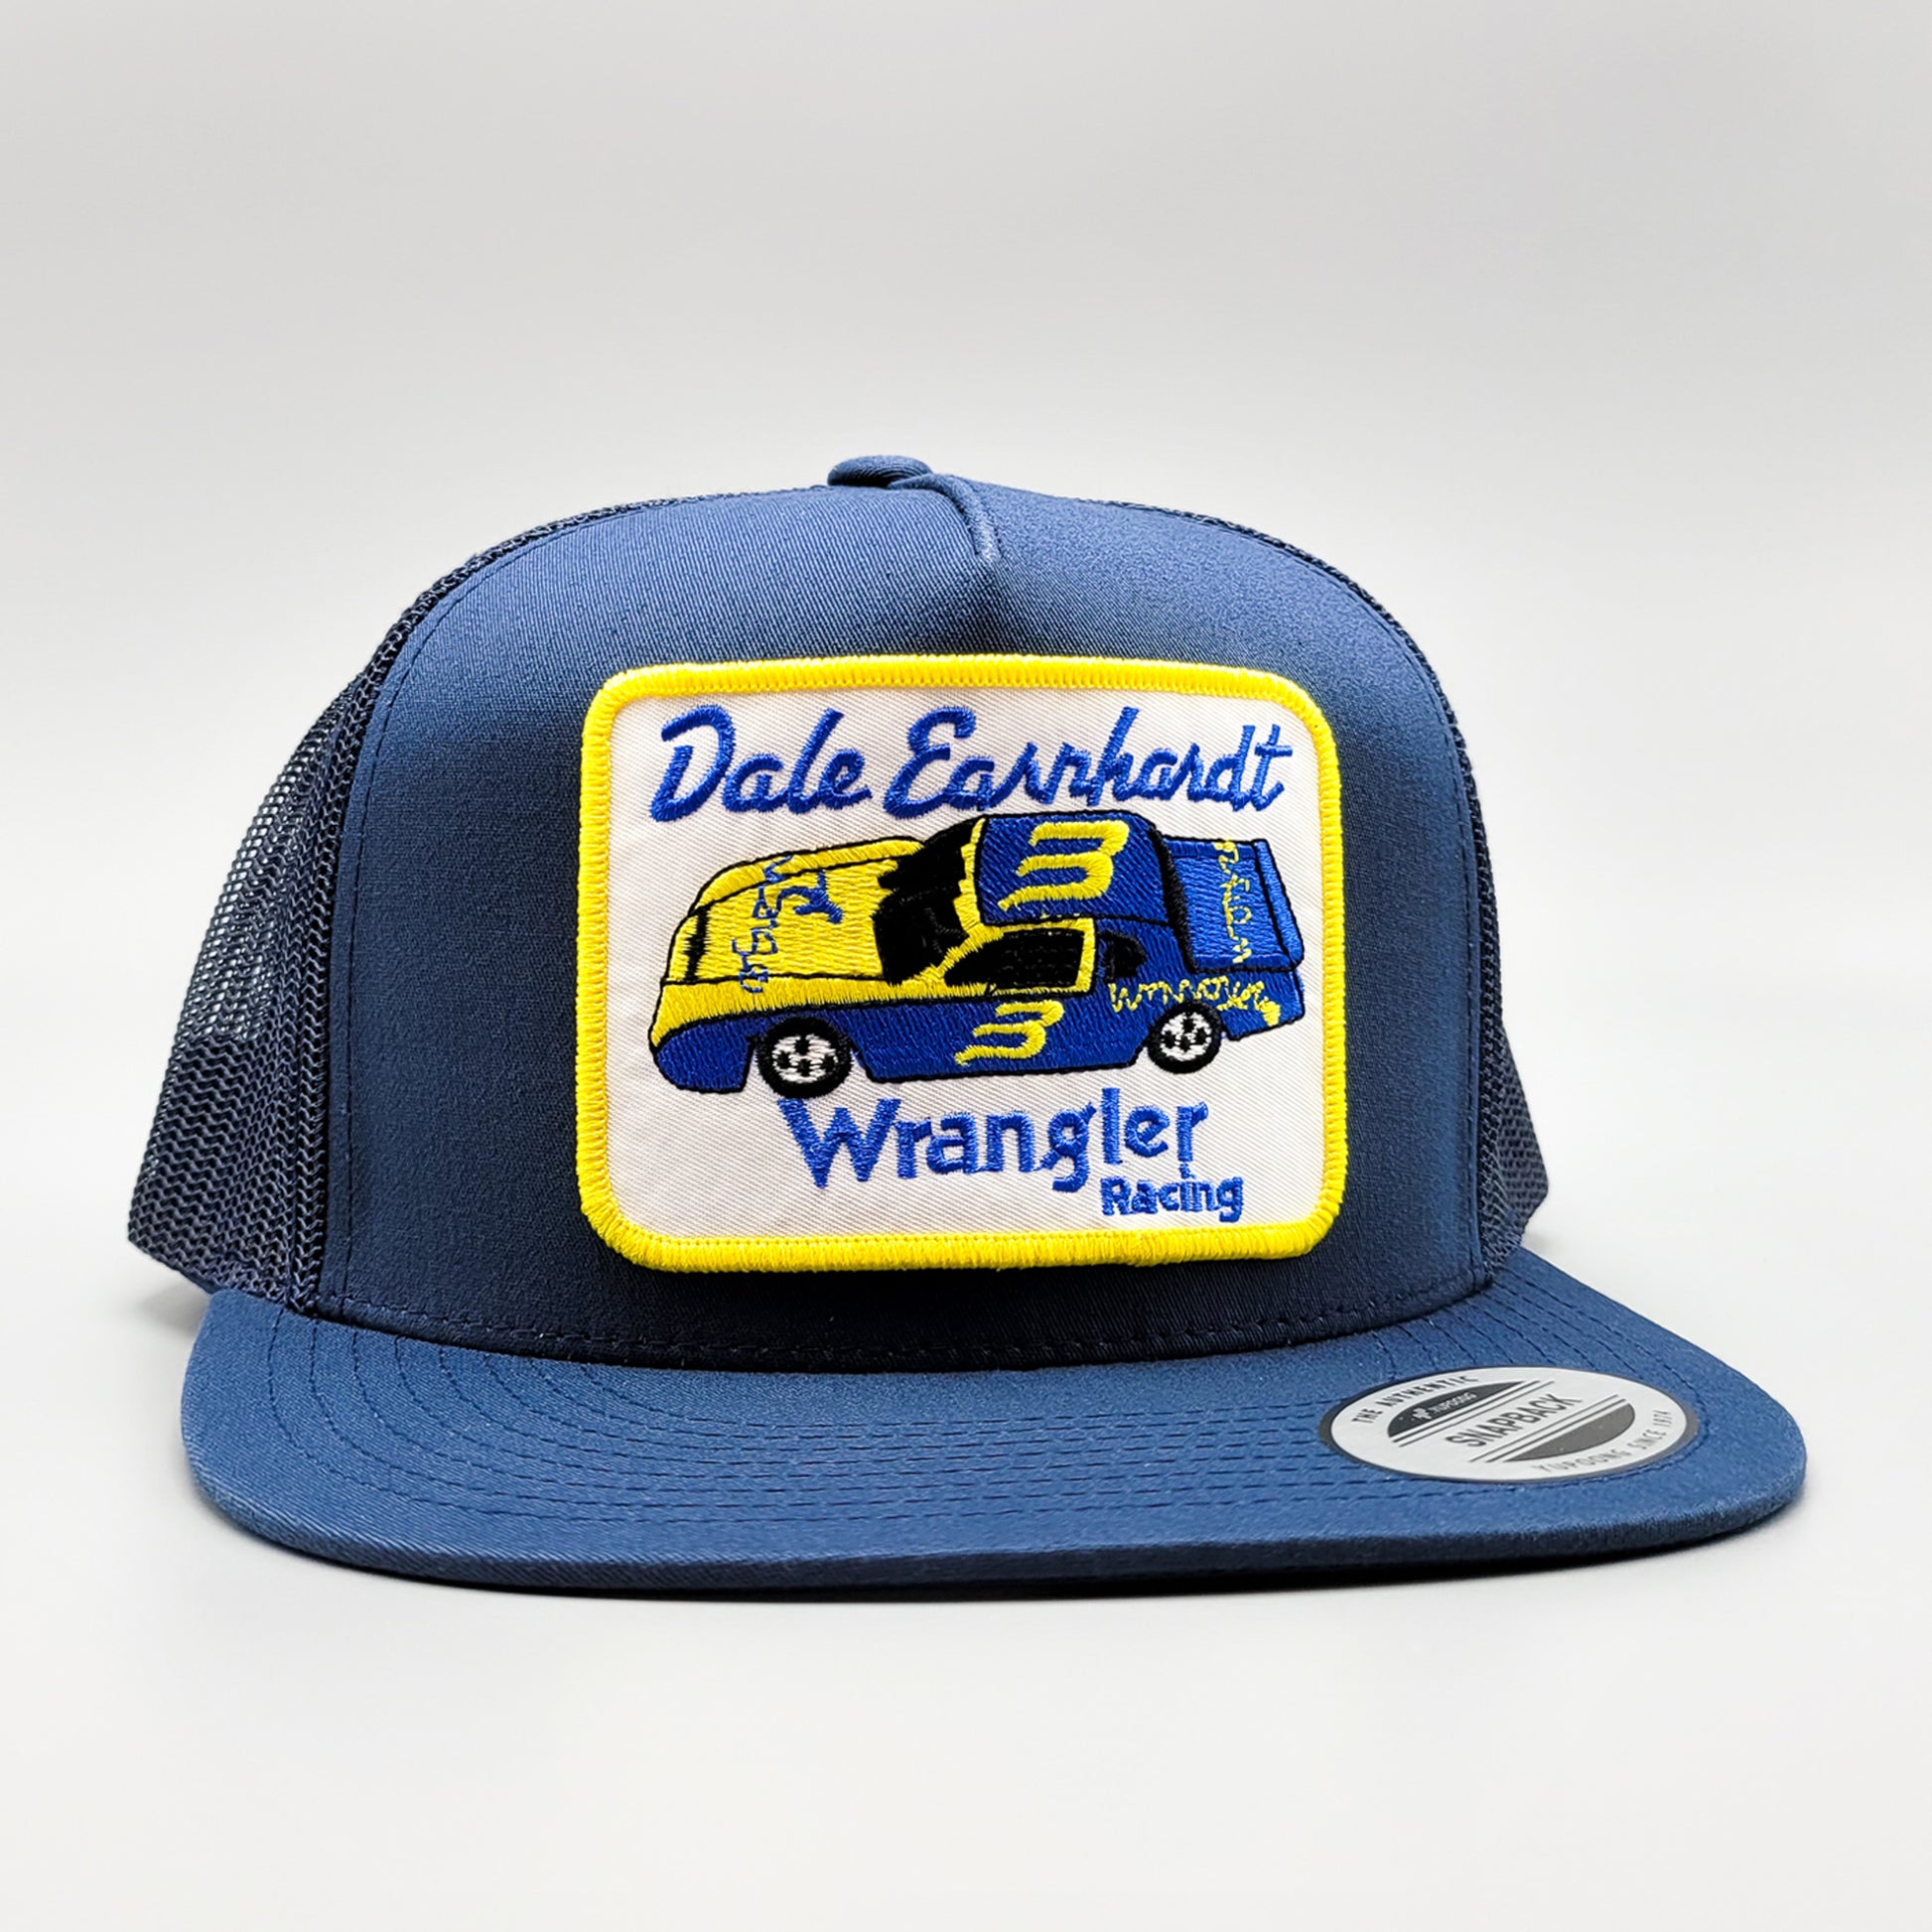 Dale Earnhardt Wrangler Racing Nascar Trucker Hat – Vintage Truckers